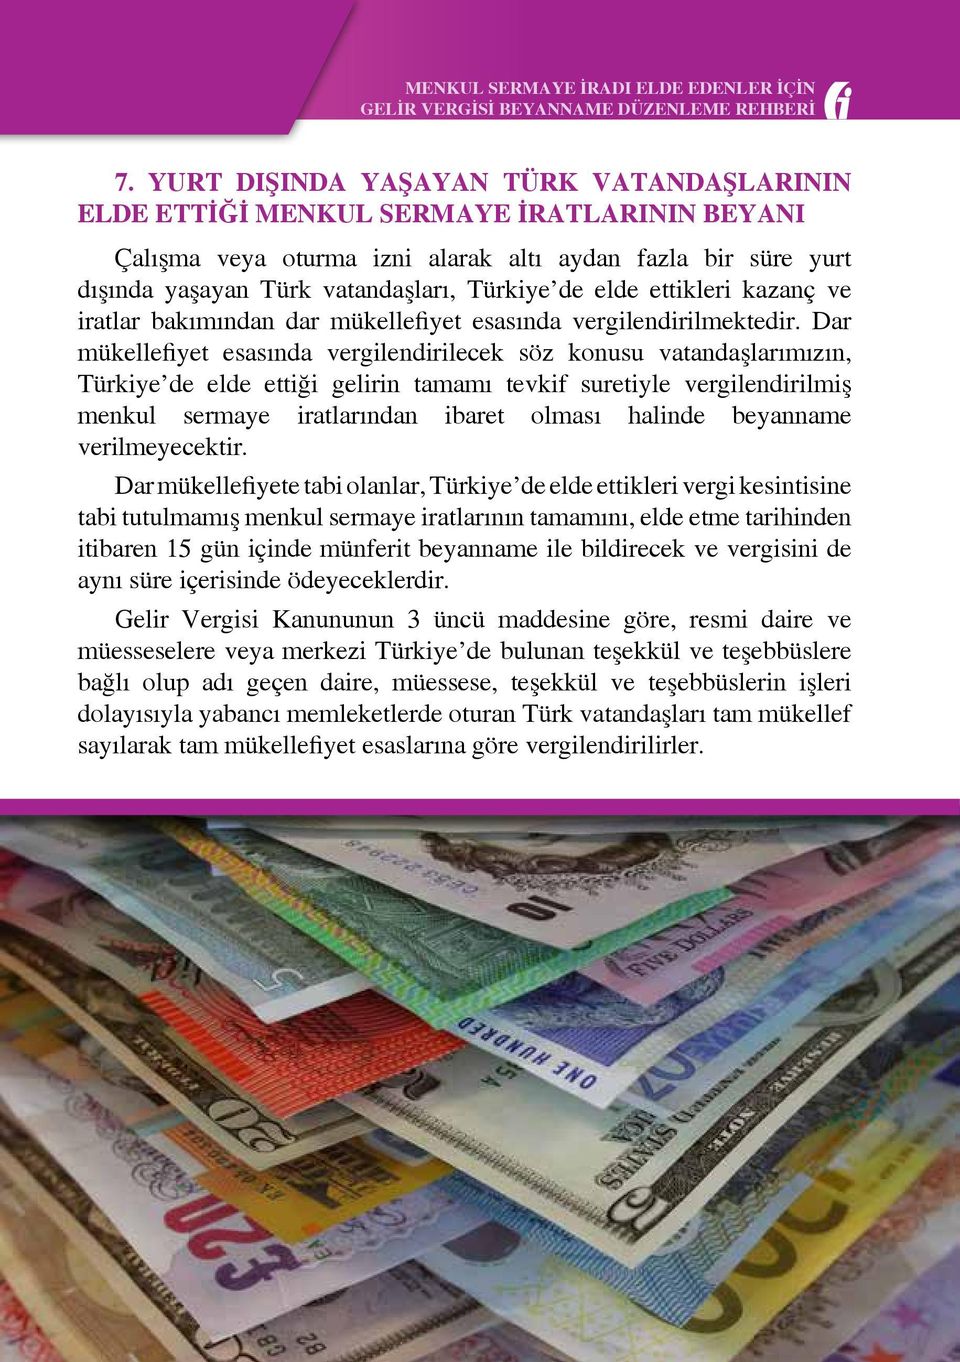 Dar mükellefiyet esasında vergilendirilecek söz konusu vatandaşlarımızın, Türkiye de elde ettiği gelirin tamamı tevkif suretiyle vergilendirilmiş menkul sermaye iratlarından ibaret olması halinde